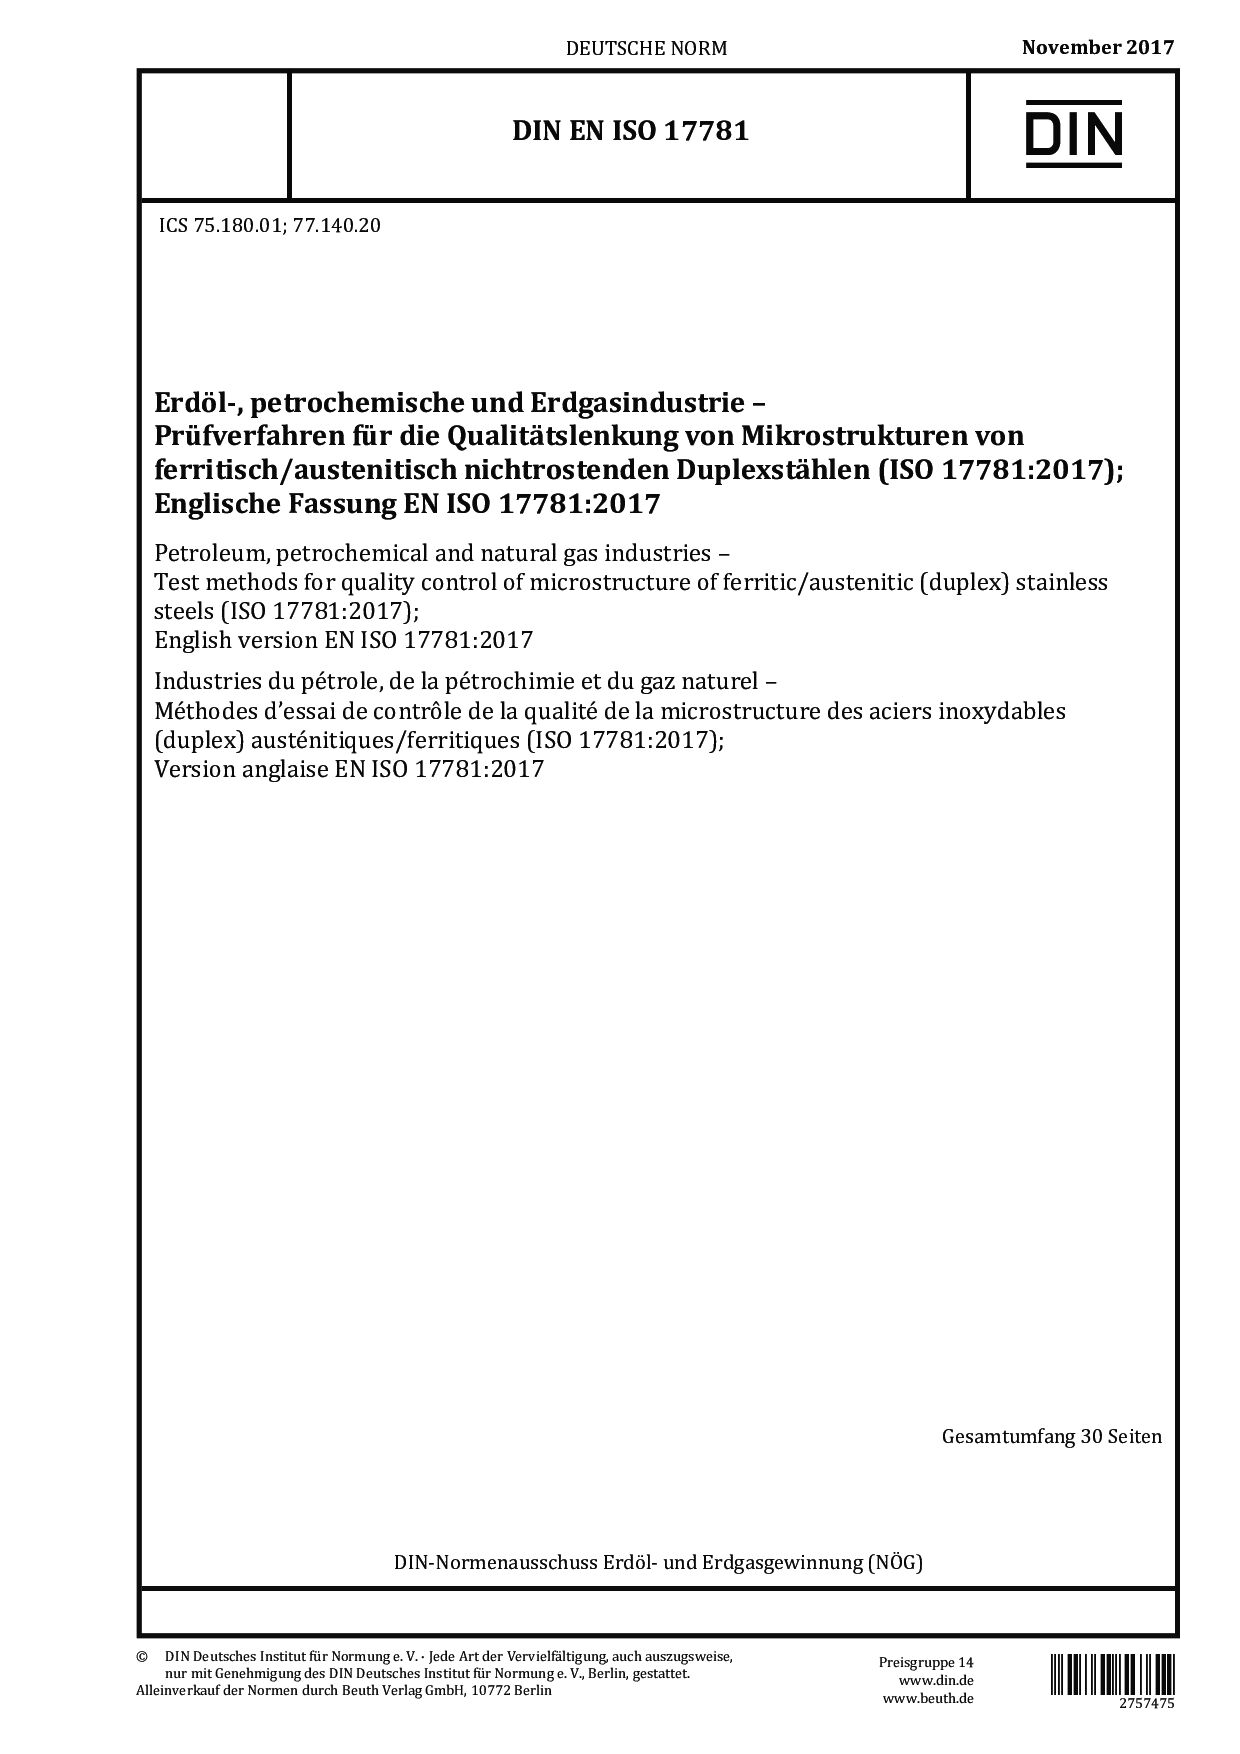 DIN EN ISO 17781:2017封面图